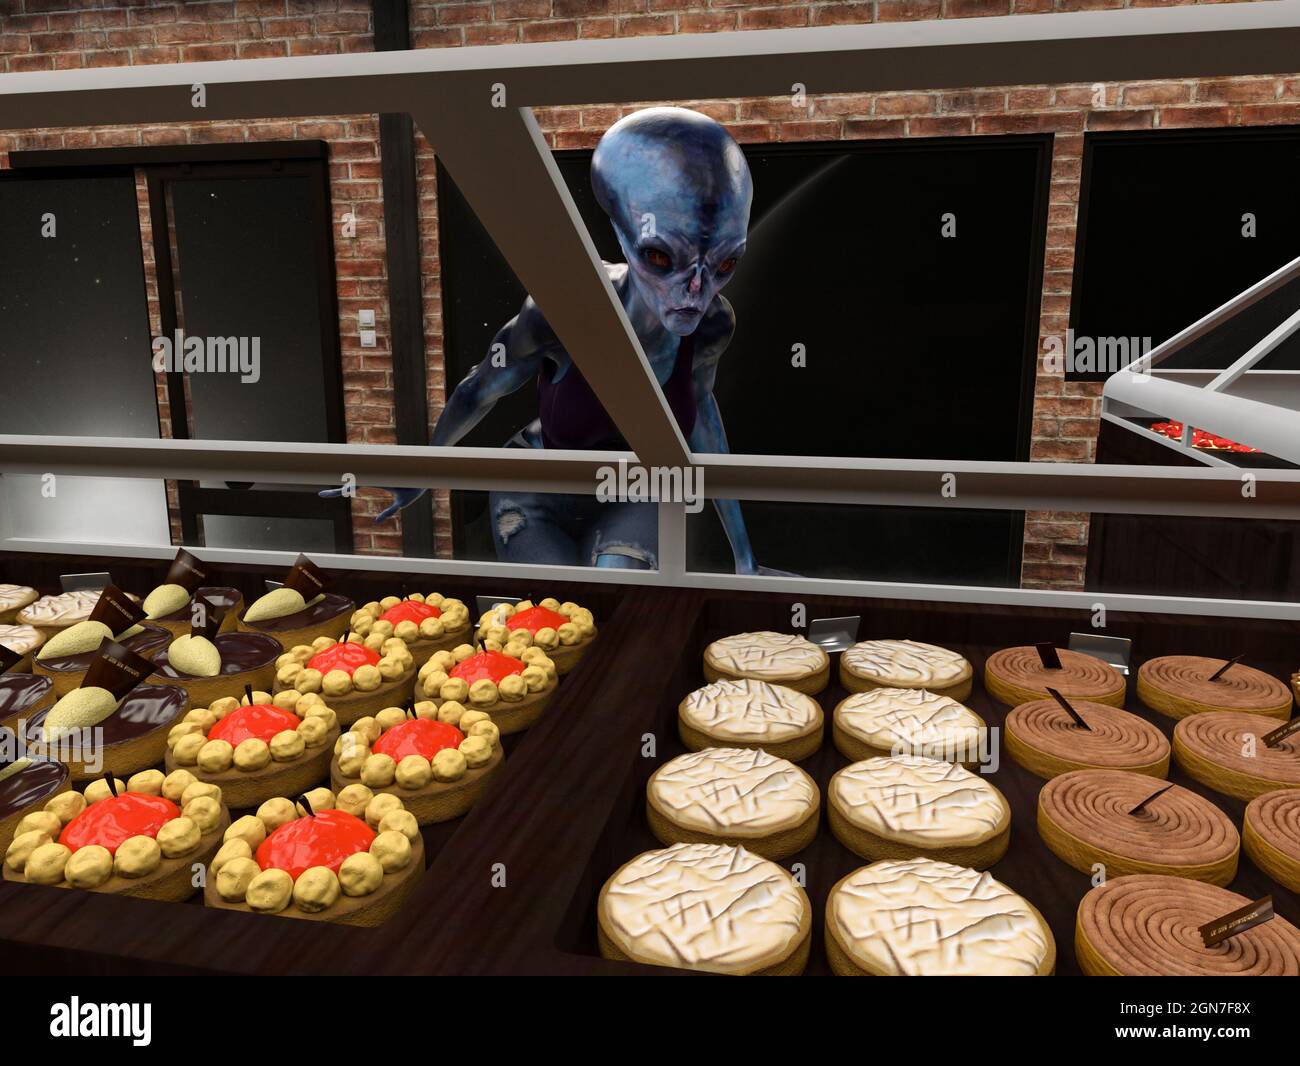 l'illustration 3d d'un extraterrestre de peau bleue semble acheter des pâtisseries dans une boulangerie avec l'espace extérieur visible à travers les fenêtres en verre. Banque D'Images